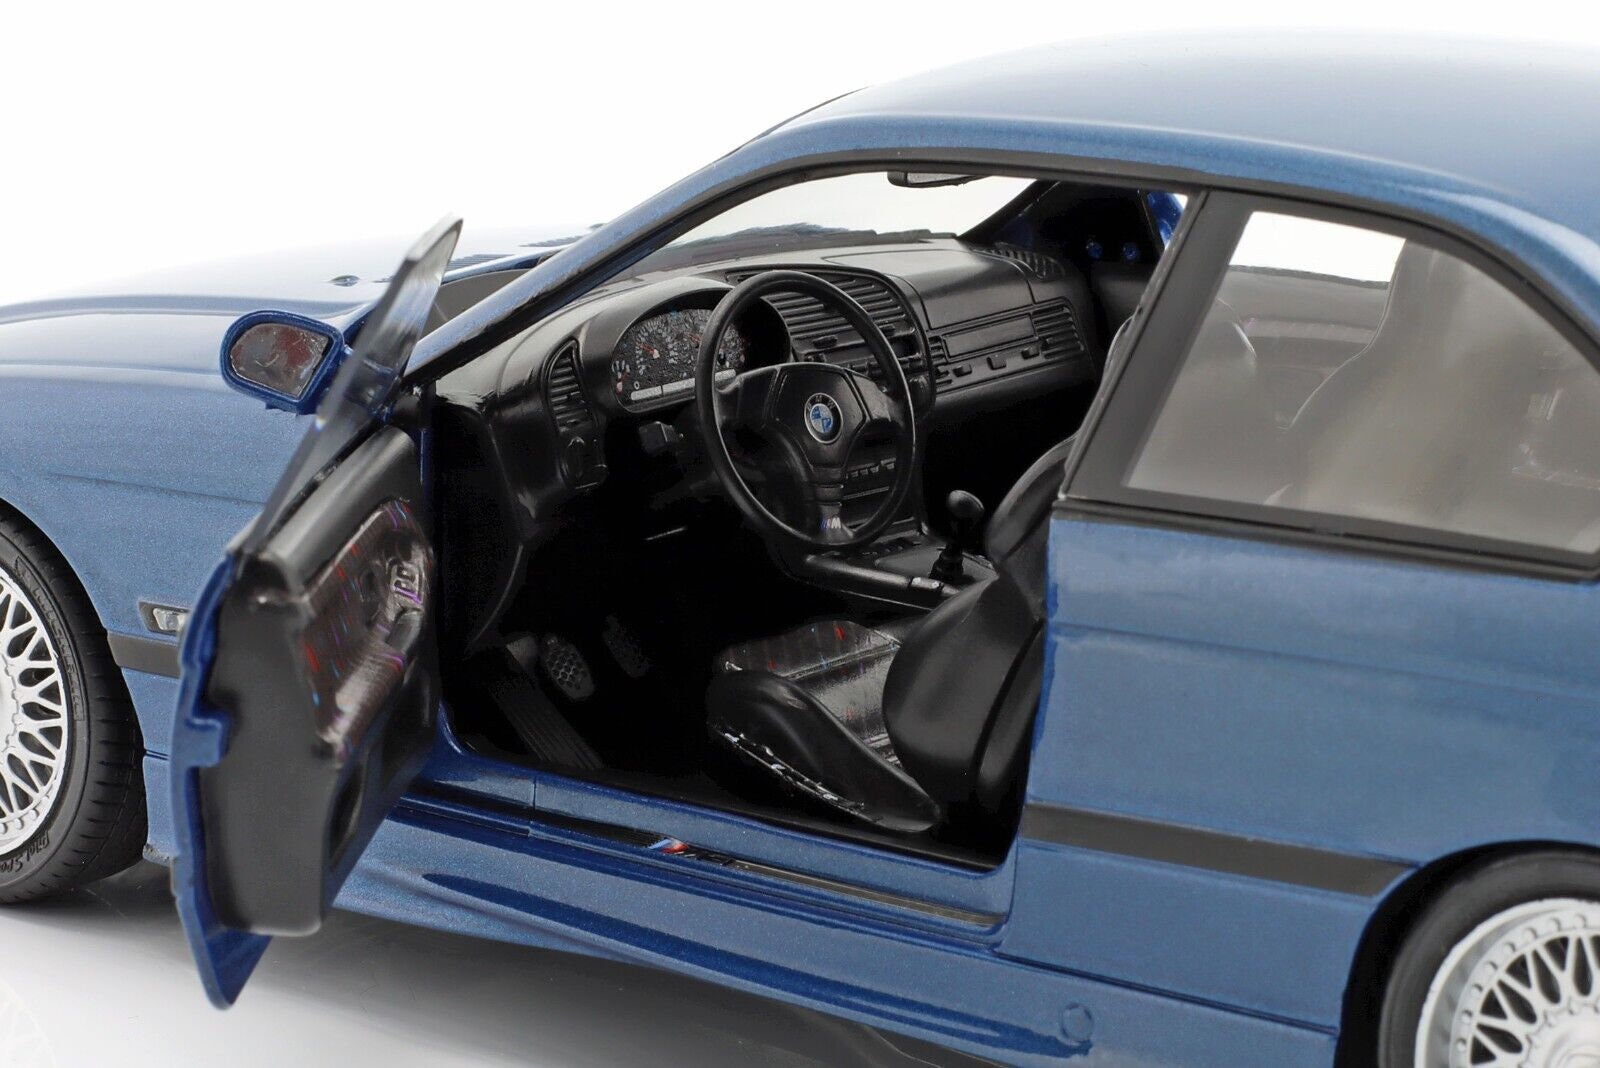 1:18 BMW E36 M3 Blue